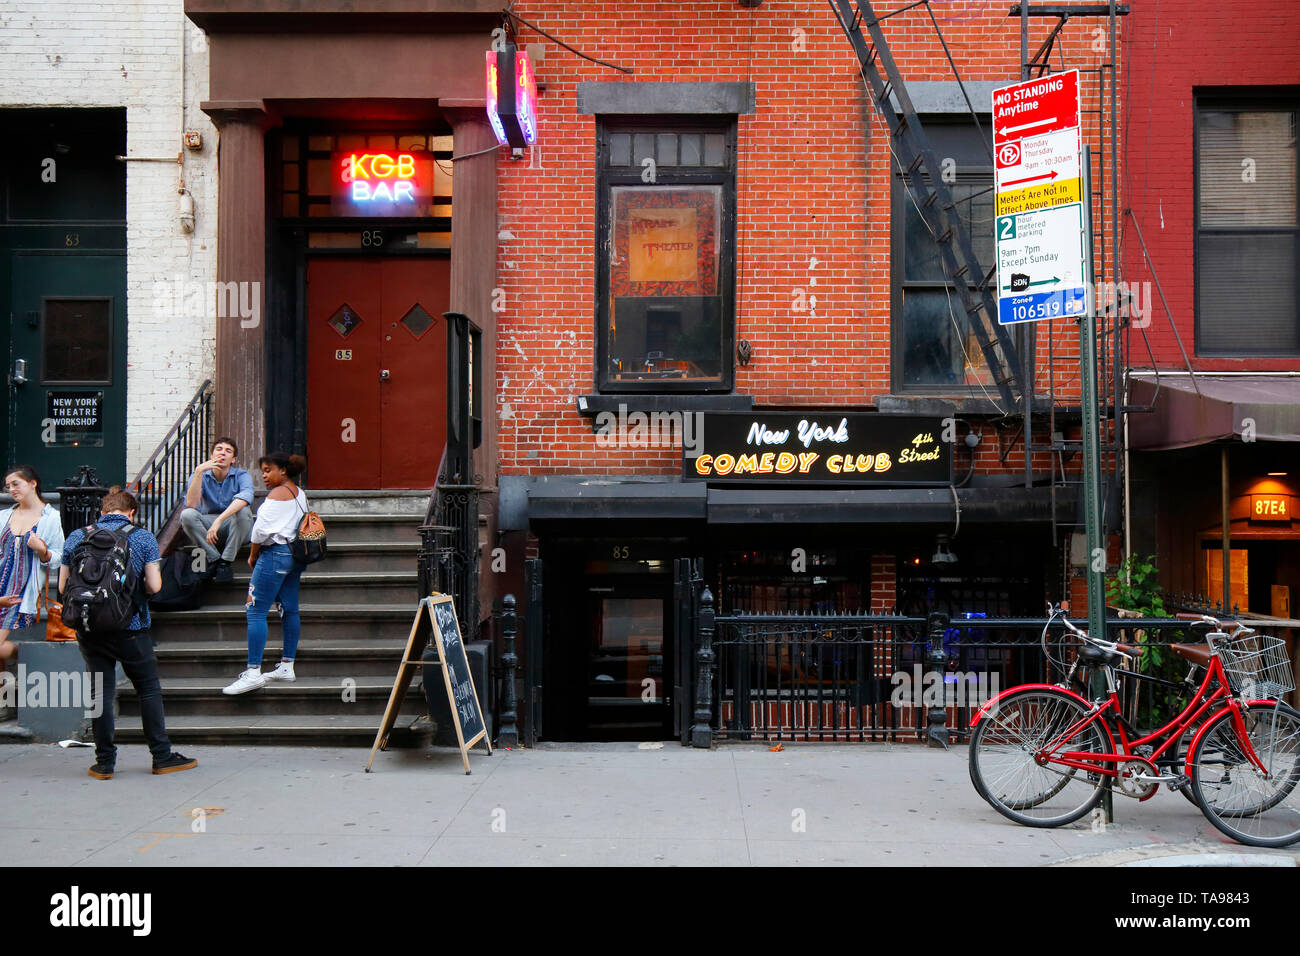 The Red Room, KGB Bar, New York Comedy Club, 85 e 4th St, New York, New York, magazzino esterno di un bar e commedia club nell'East Village di Manhattan Foto Stock